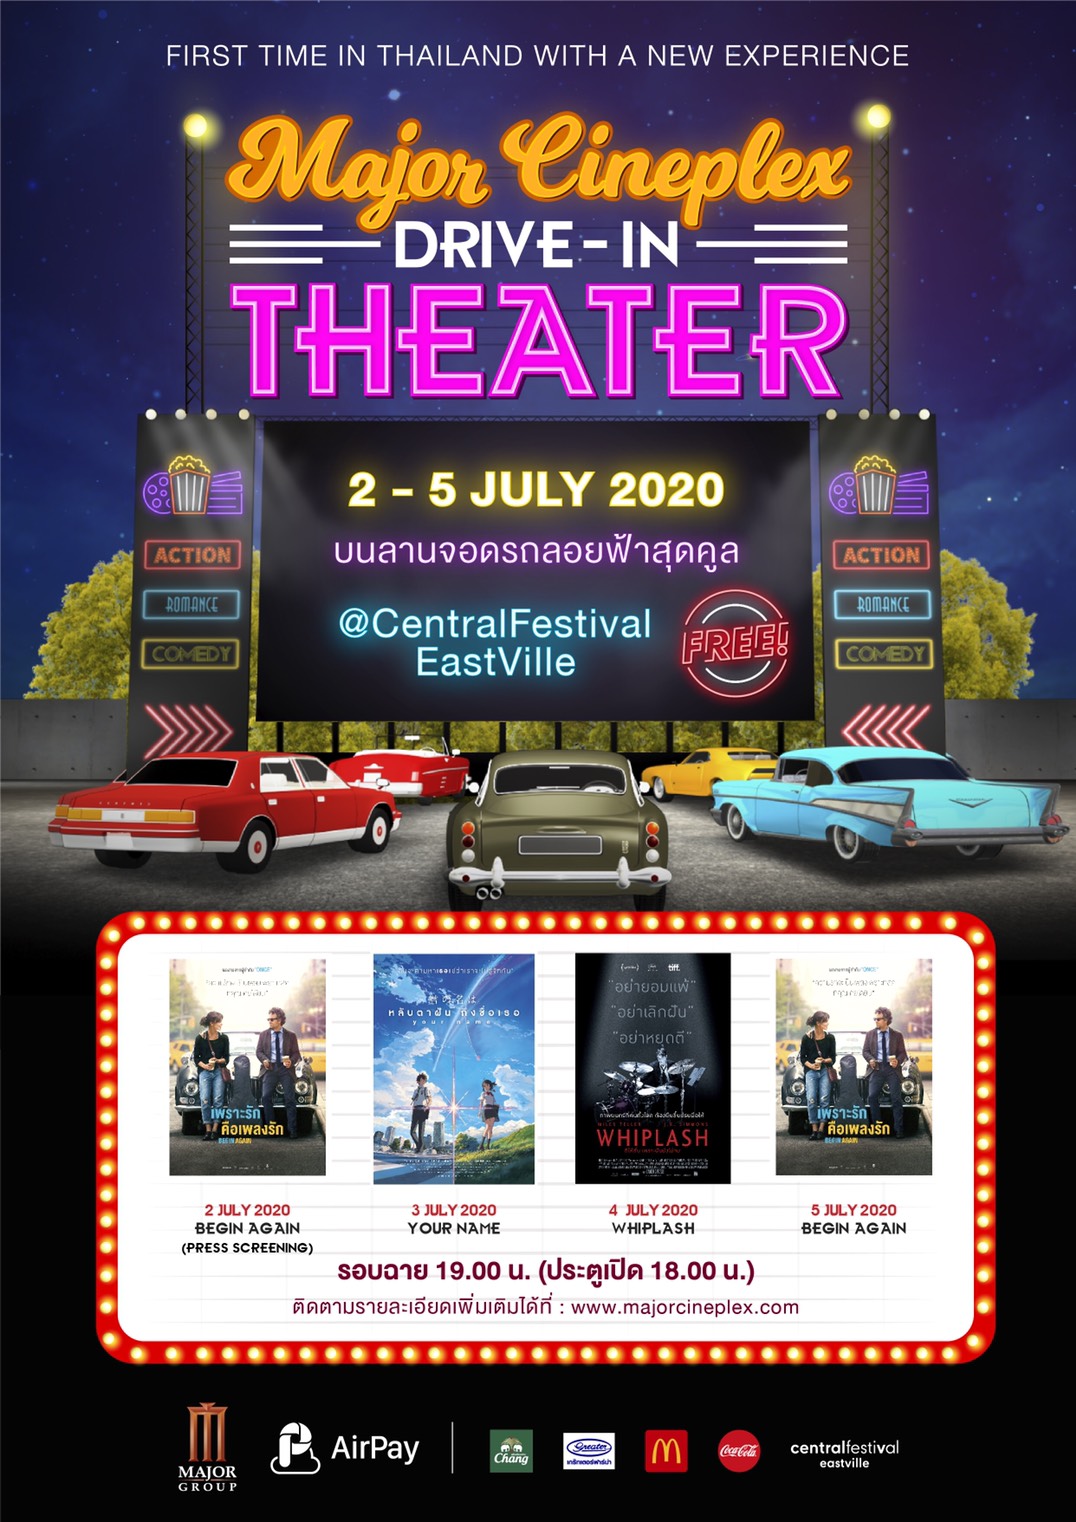 ครั้งแรกในประเทศไทย! เมเจอร์ ร่วมกับ แอร์เพย์ จัด Drive-In Theater ลอยฟ้าสุดคูล!